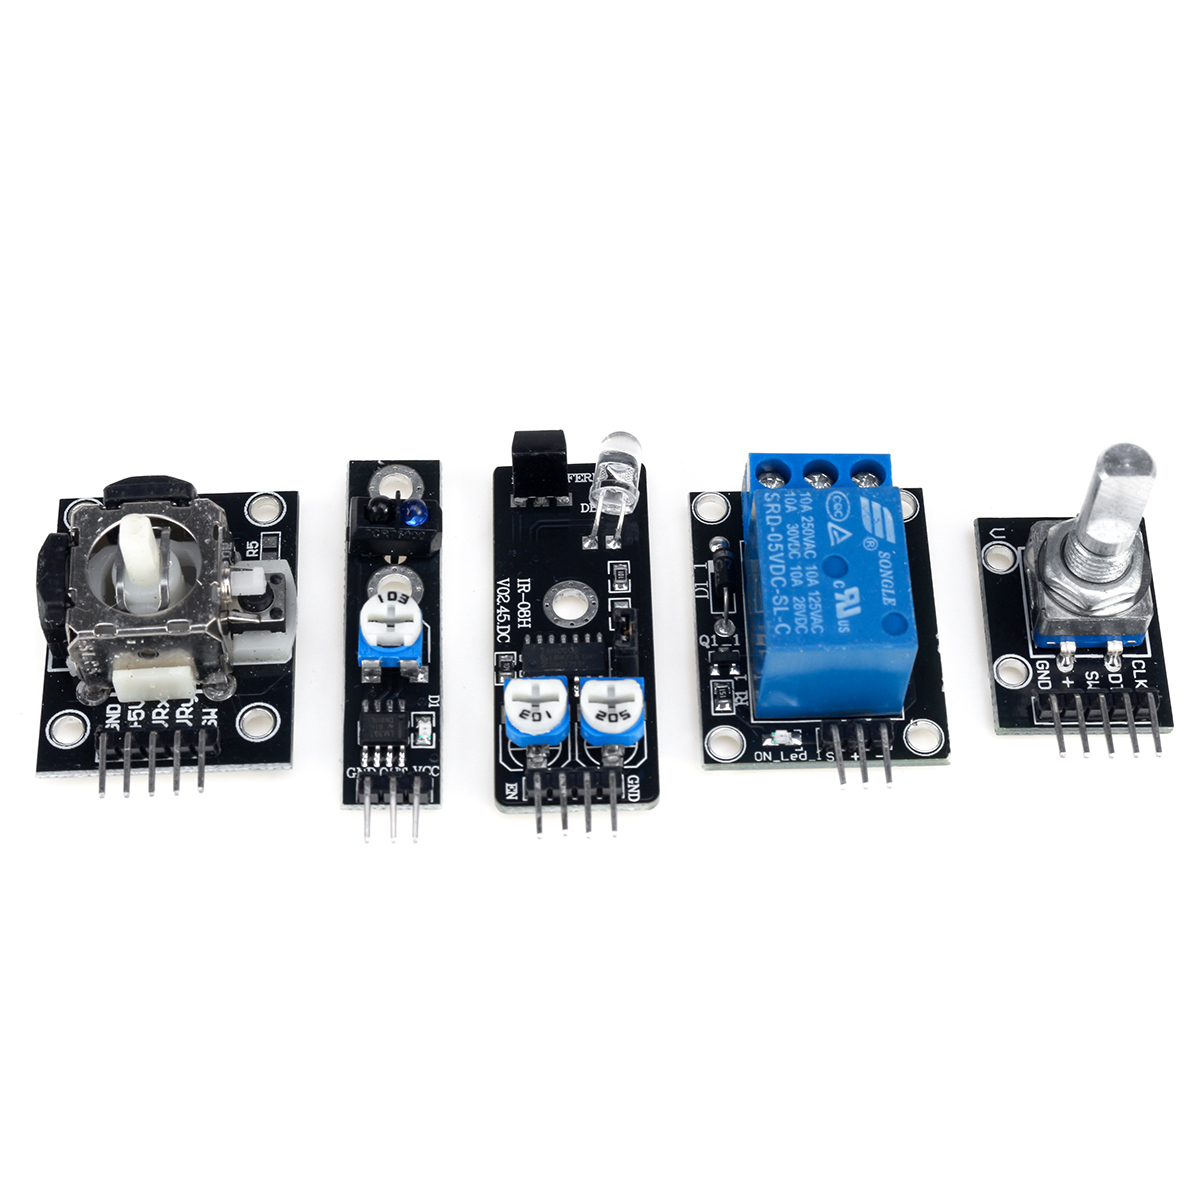 45-IN-137-IN-1-Sensor-Module-Starter-Kits-Set-For-Arduino-Raspberry-Pi-Education-Bag-Package-1619901-10